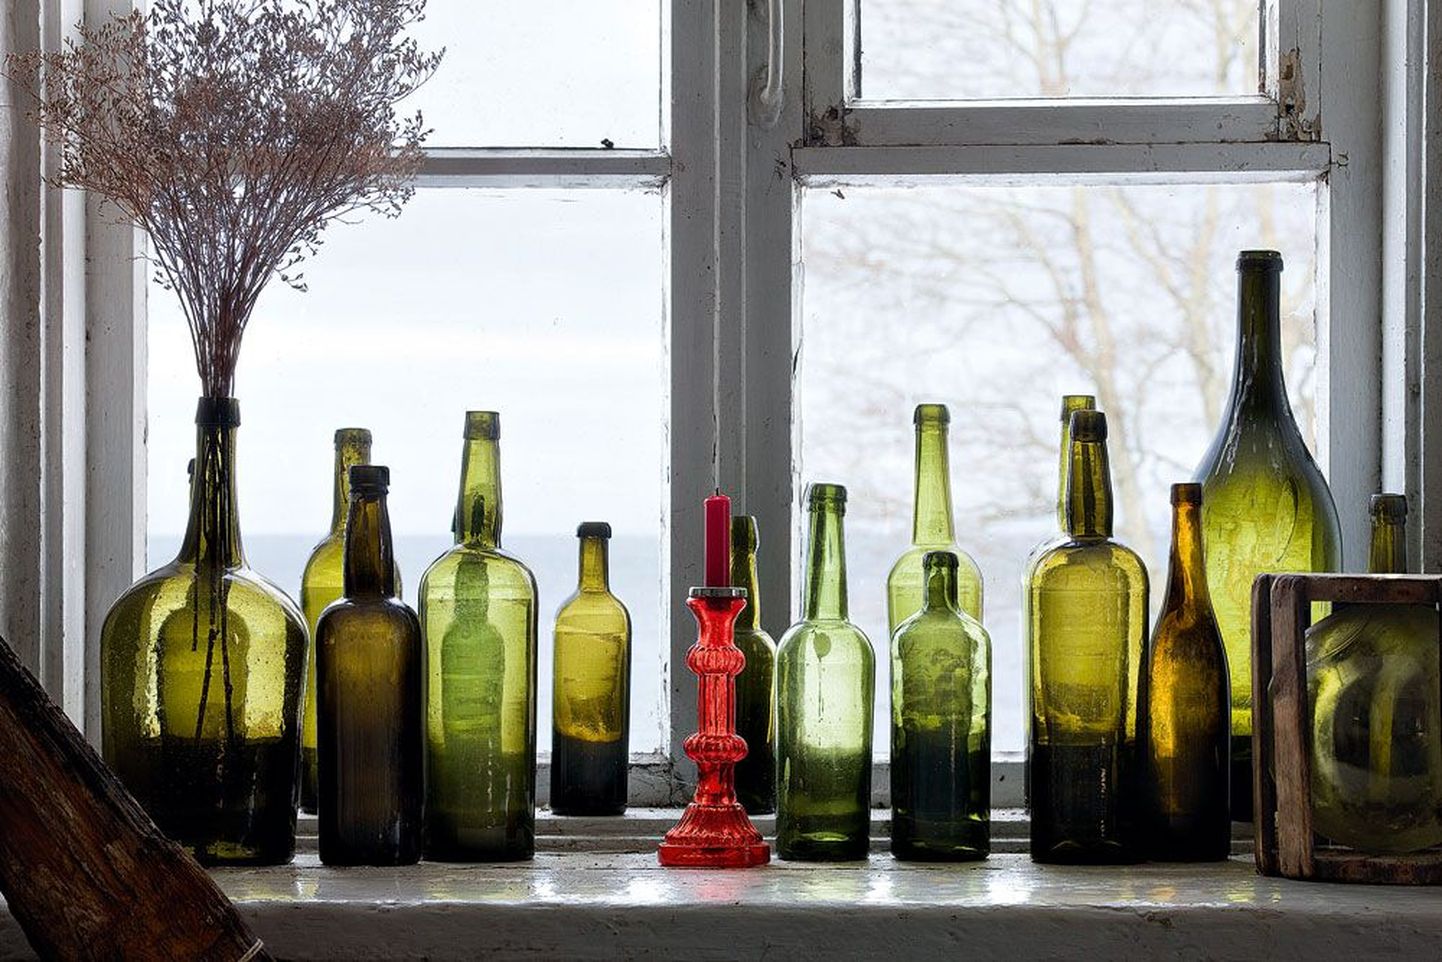 Eri aegadest pärit pudelid Käsmu meremuuseumi aknal.